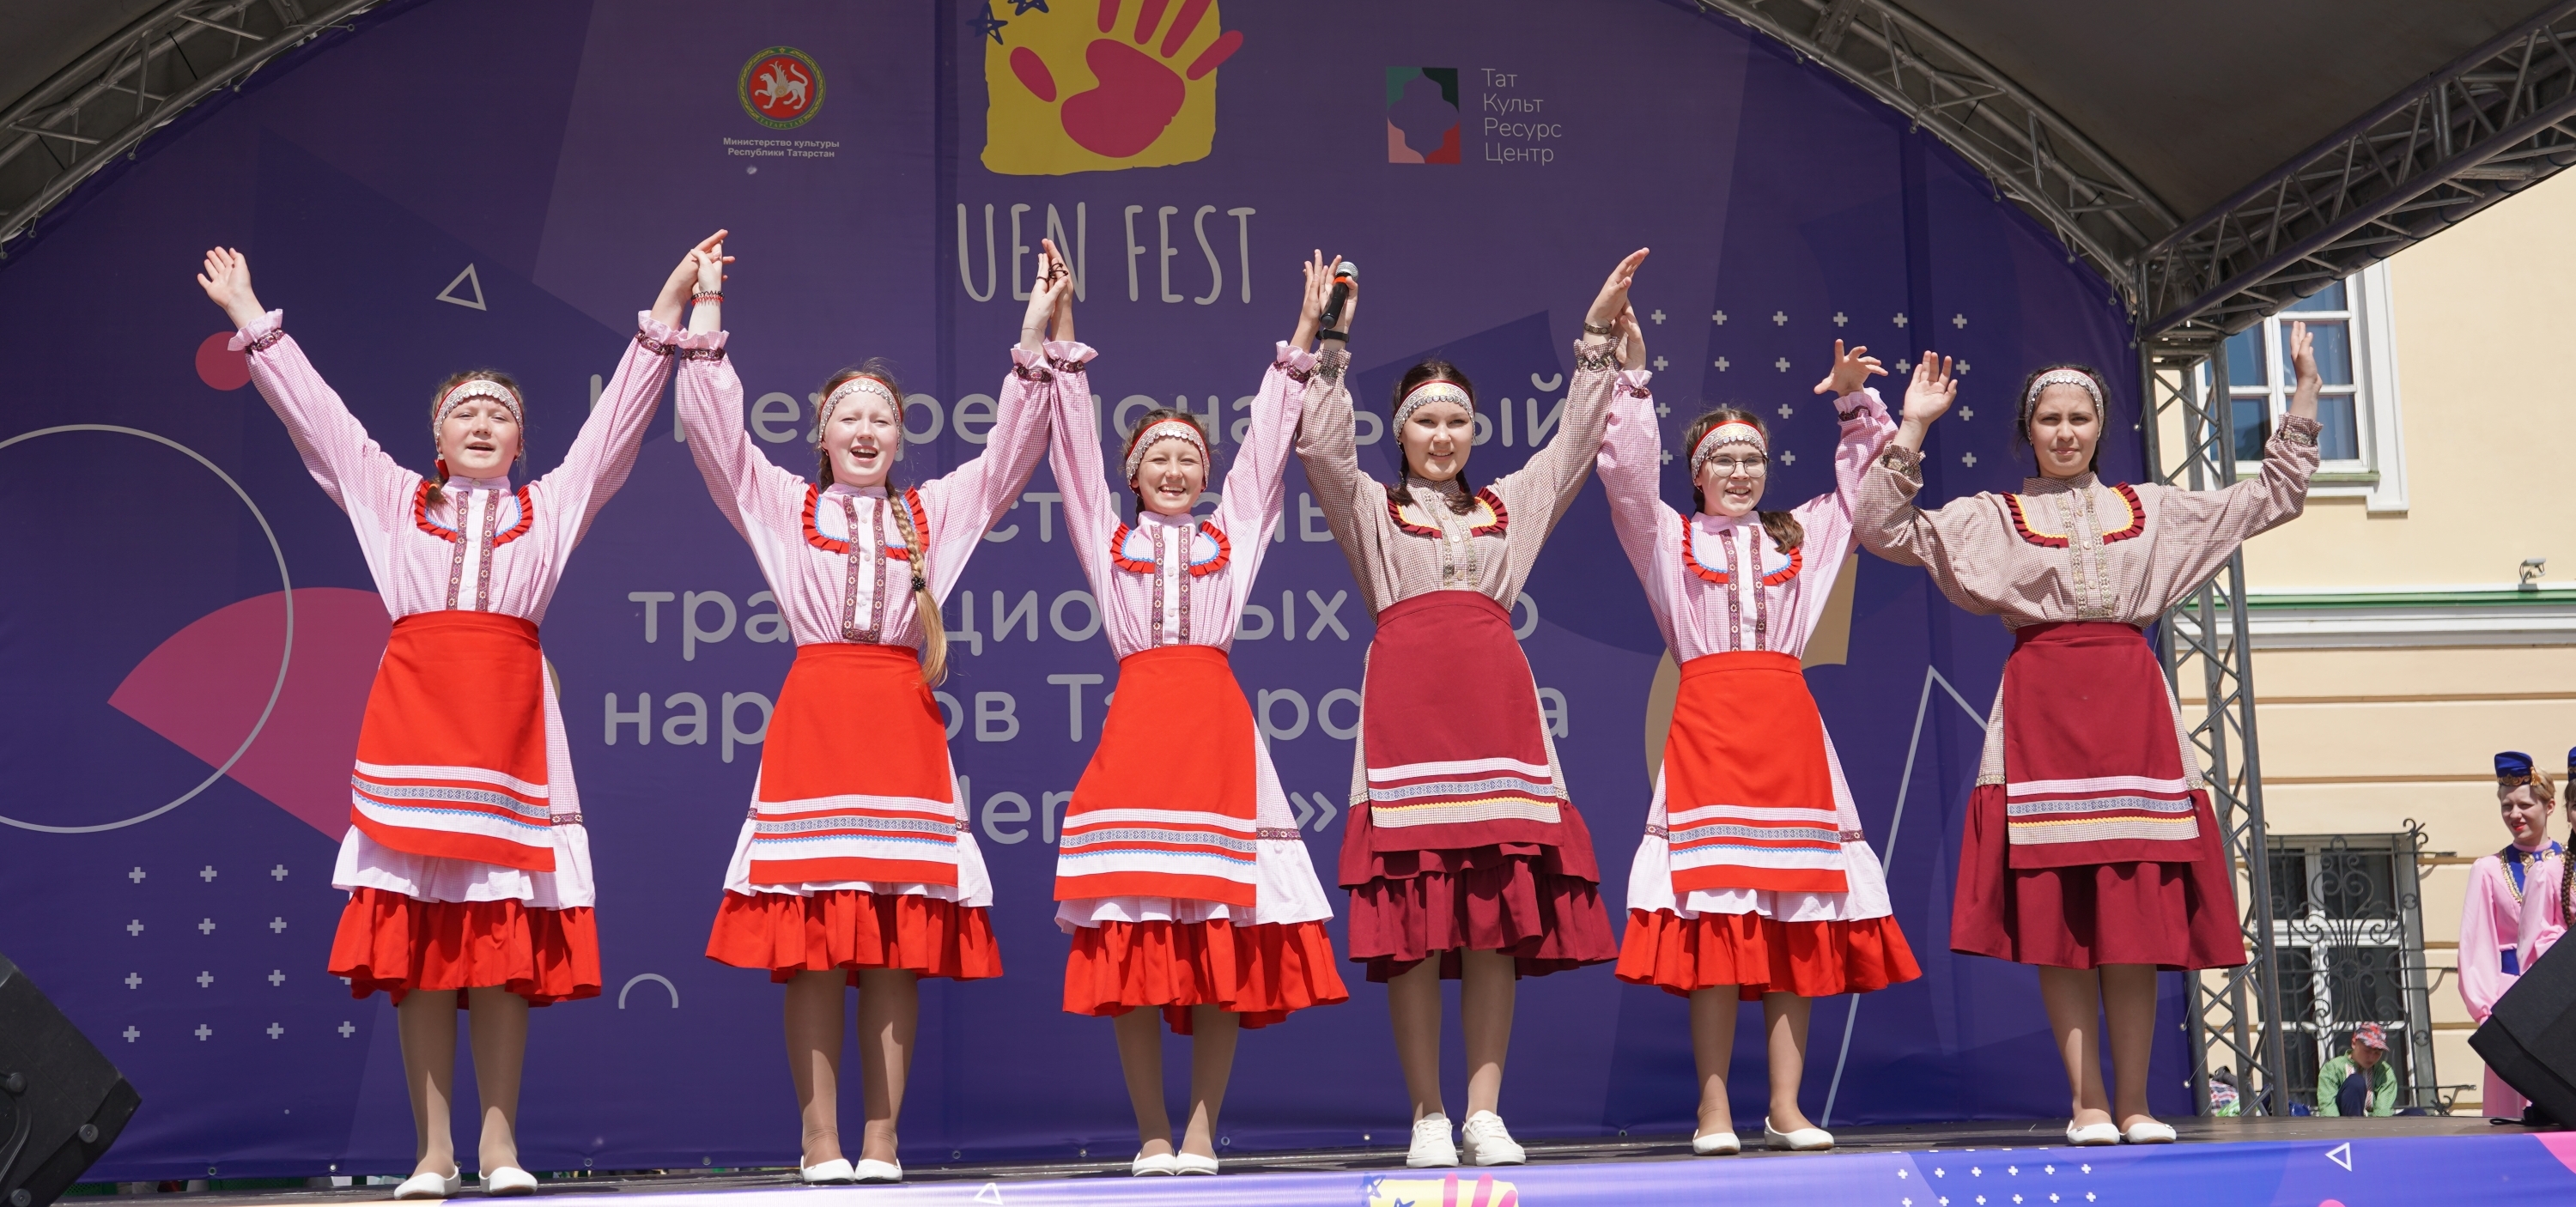 Победители фестиваля традиционных игр «УенФест» - в Сочи!